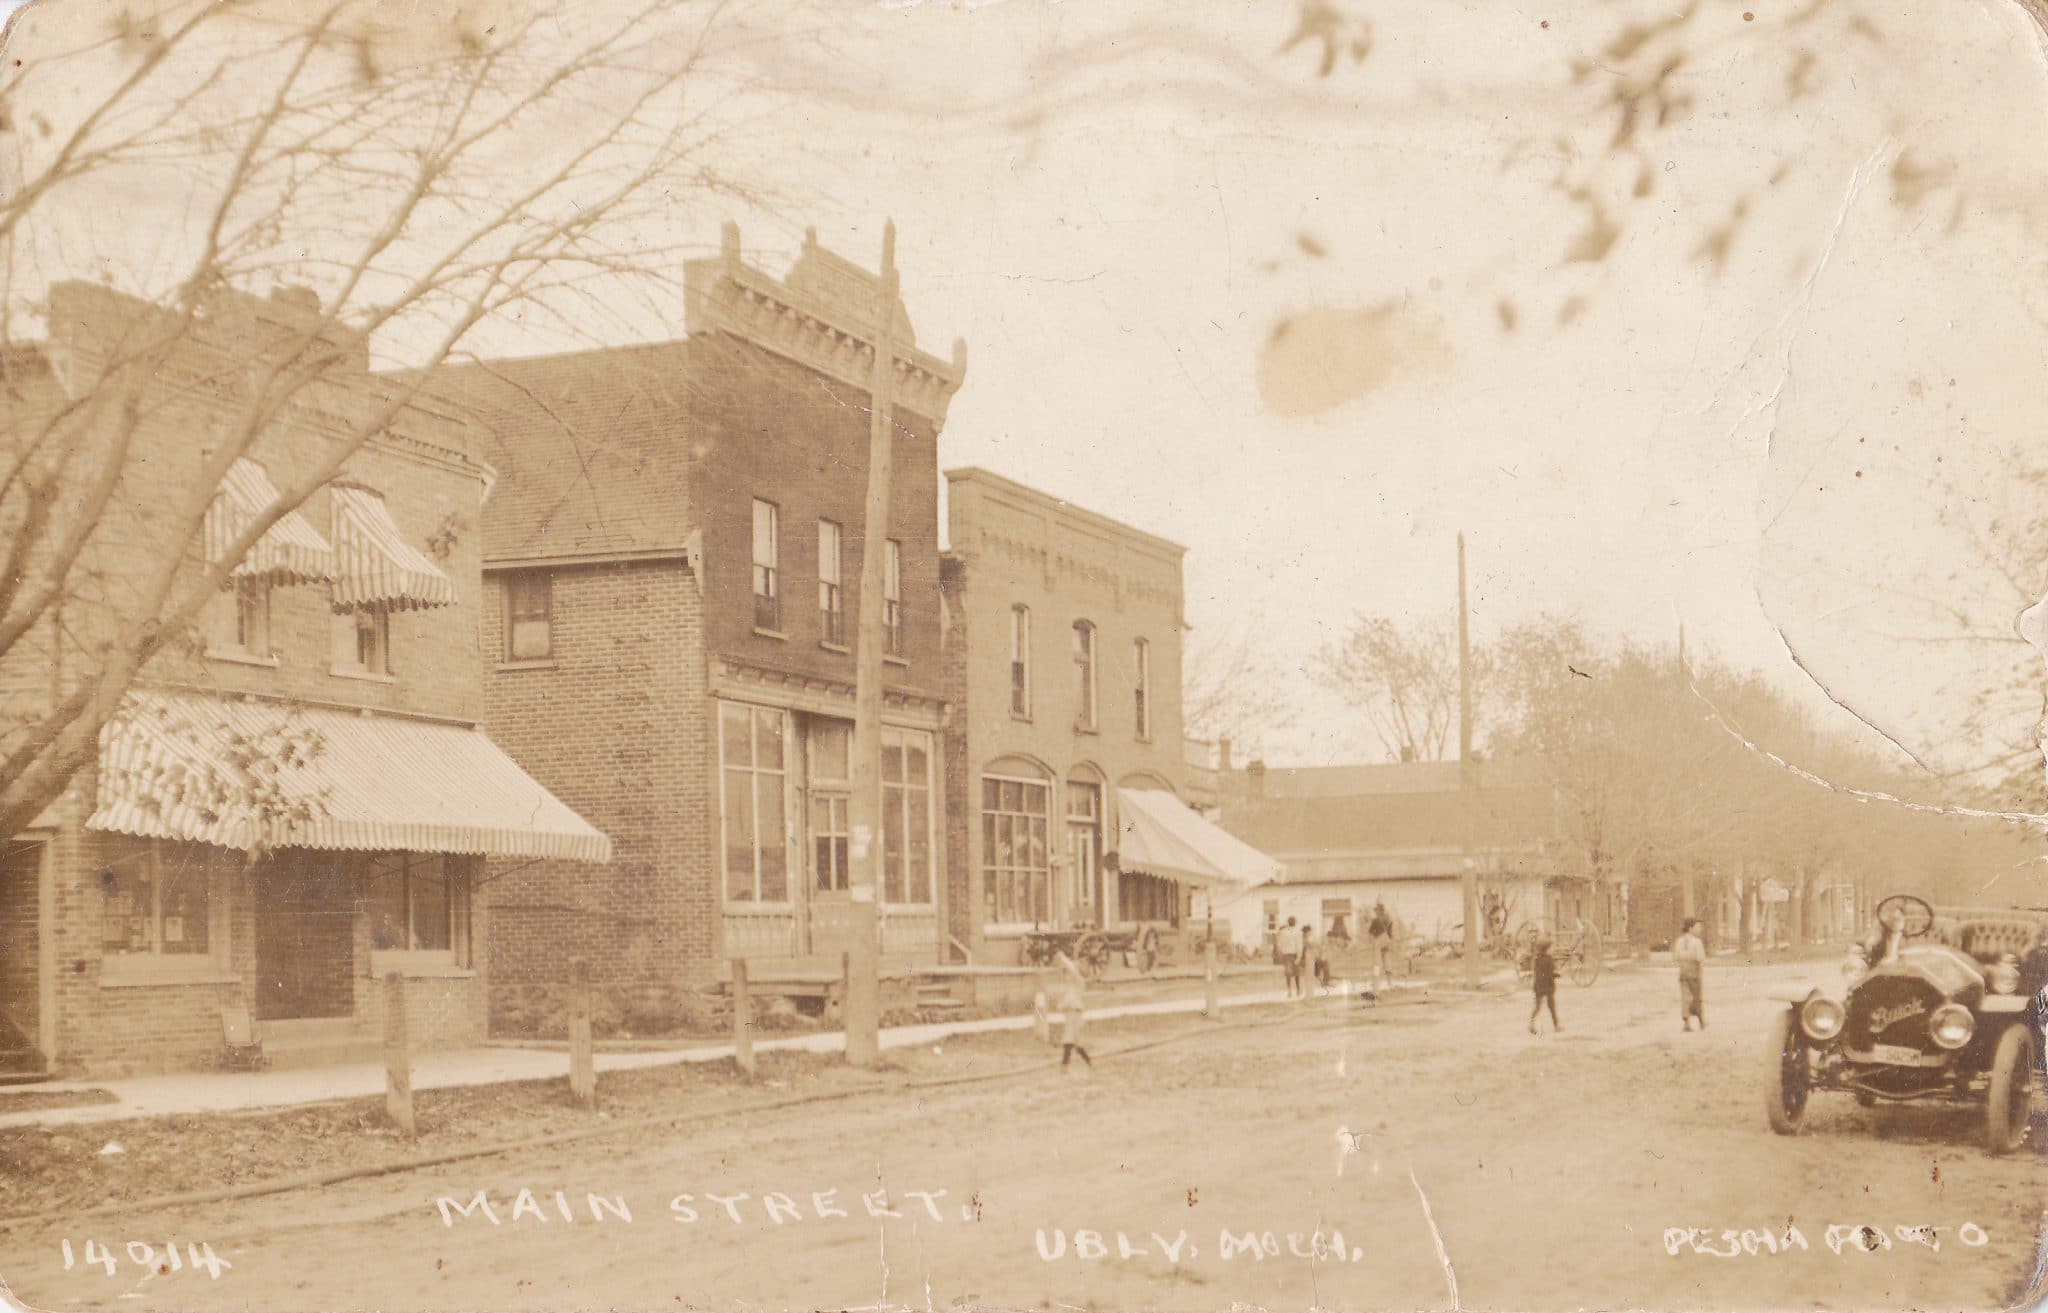 Ubly Main Street circa 1900 - Courtesy Minden City Herald